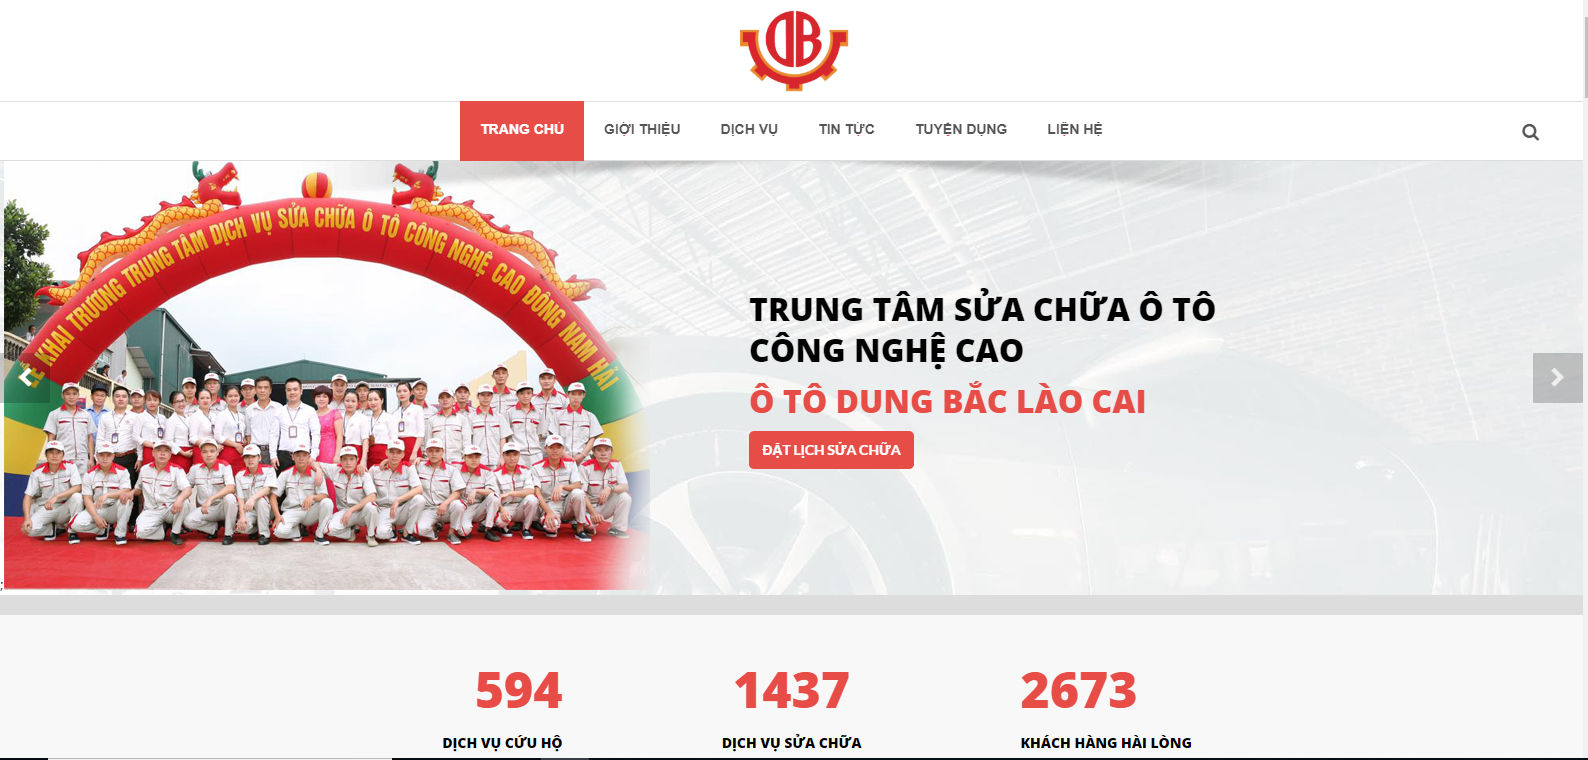 trang chủ website của ô tô Dung Bắc Lào Cai